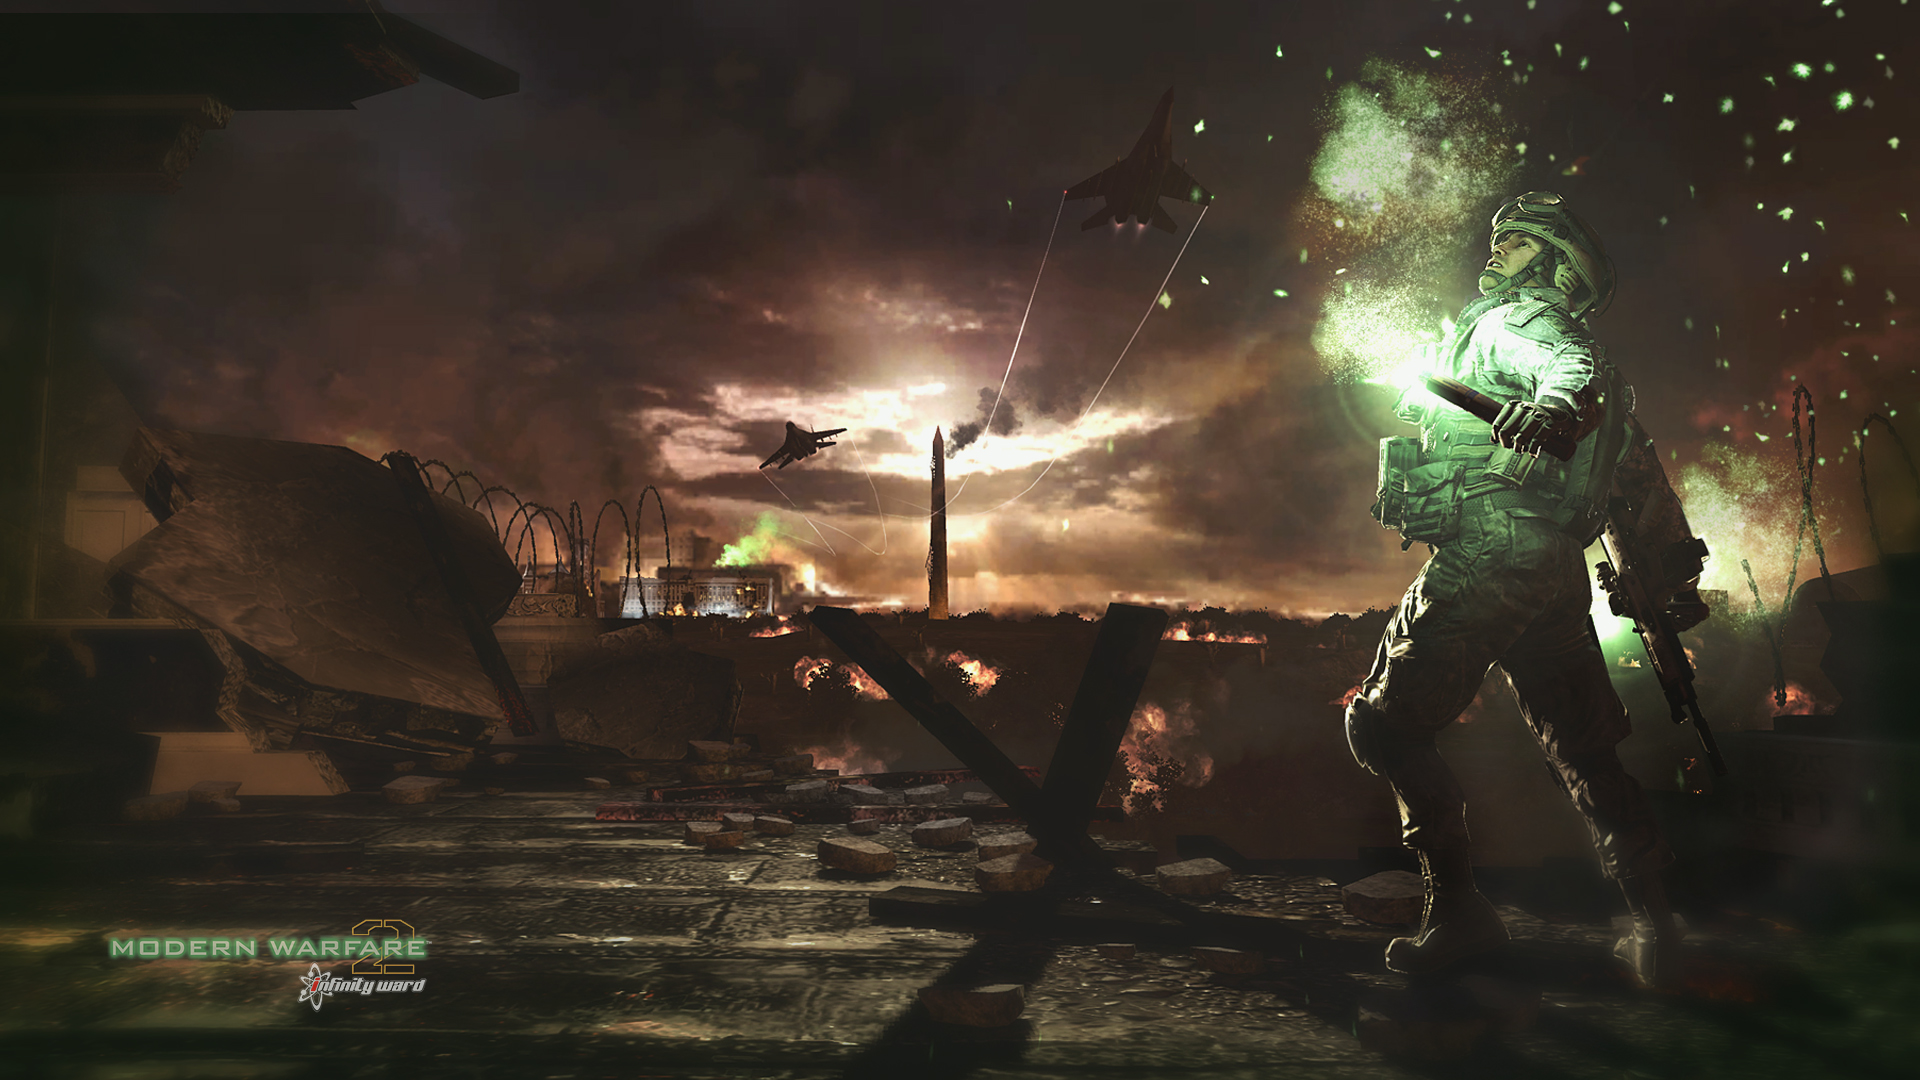 Nighttime Warzone Wallpaper - Modern Warfare 2 Wallpaper Hd , HD Wallpaper & Backgrounds